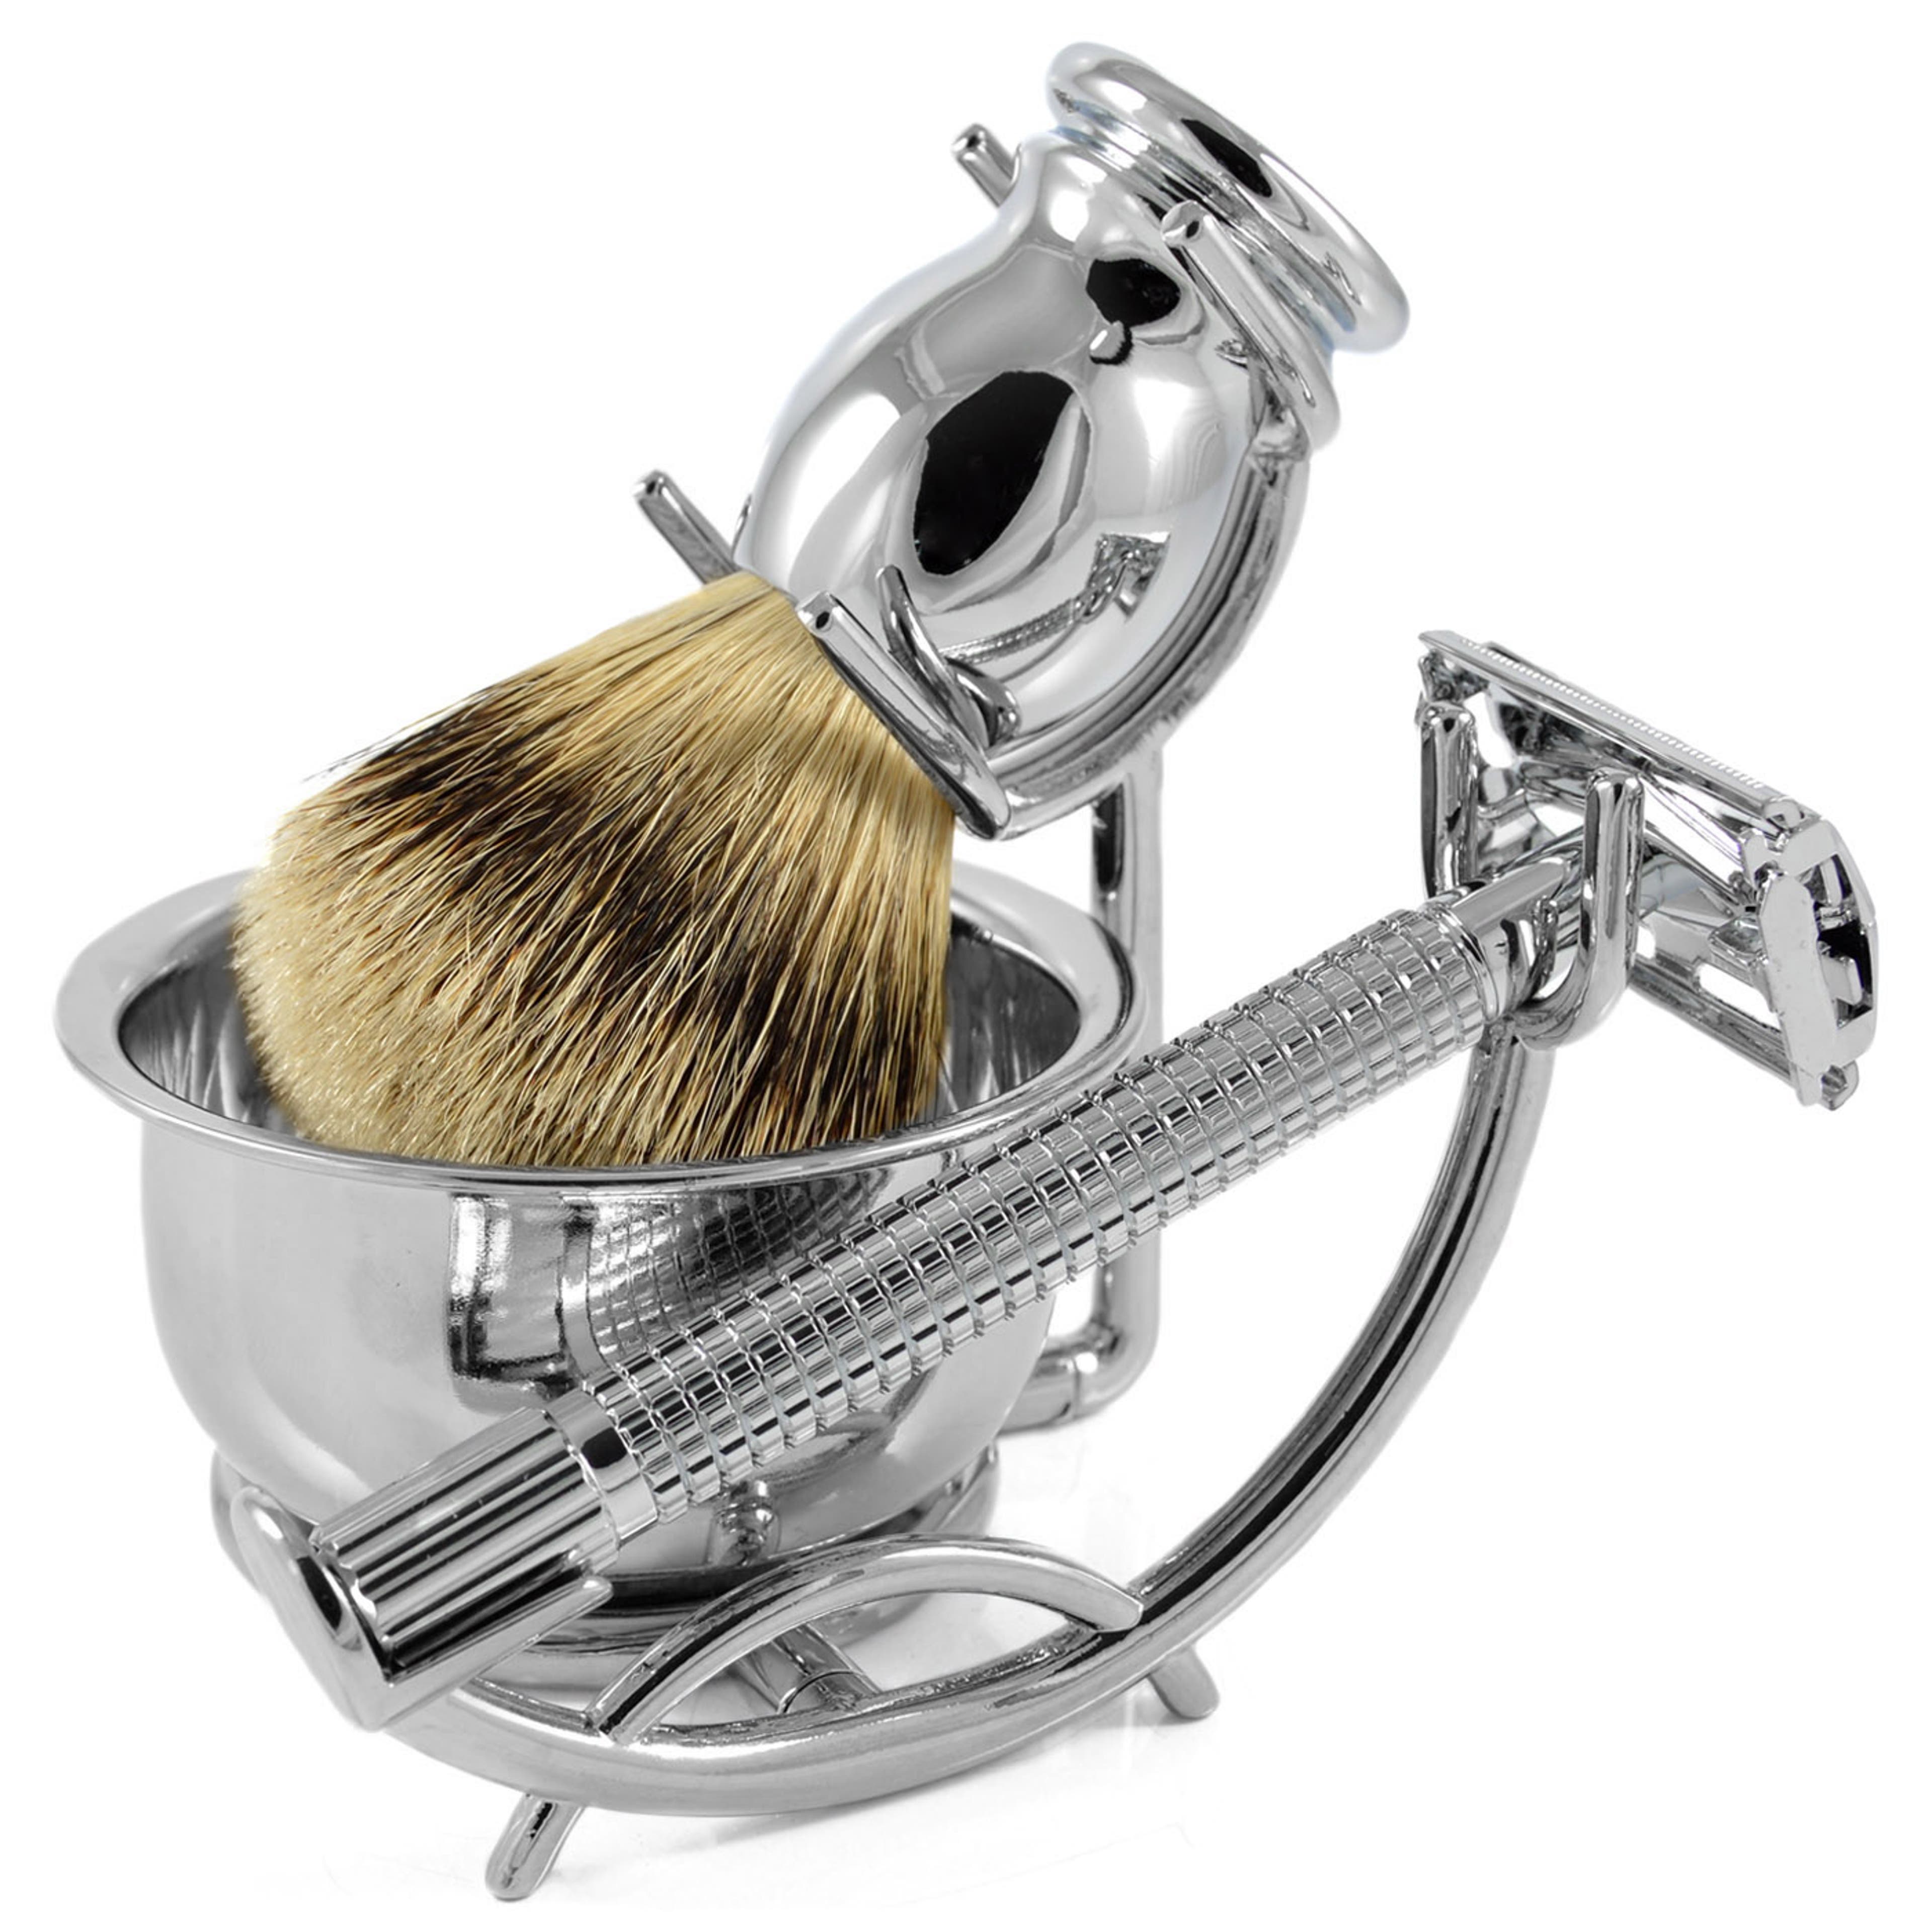 Silvertip Badger komplett borotválkozókészlet